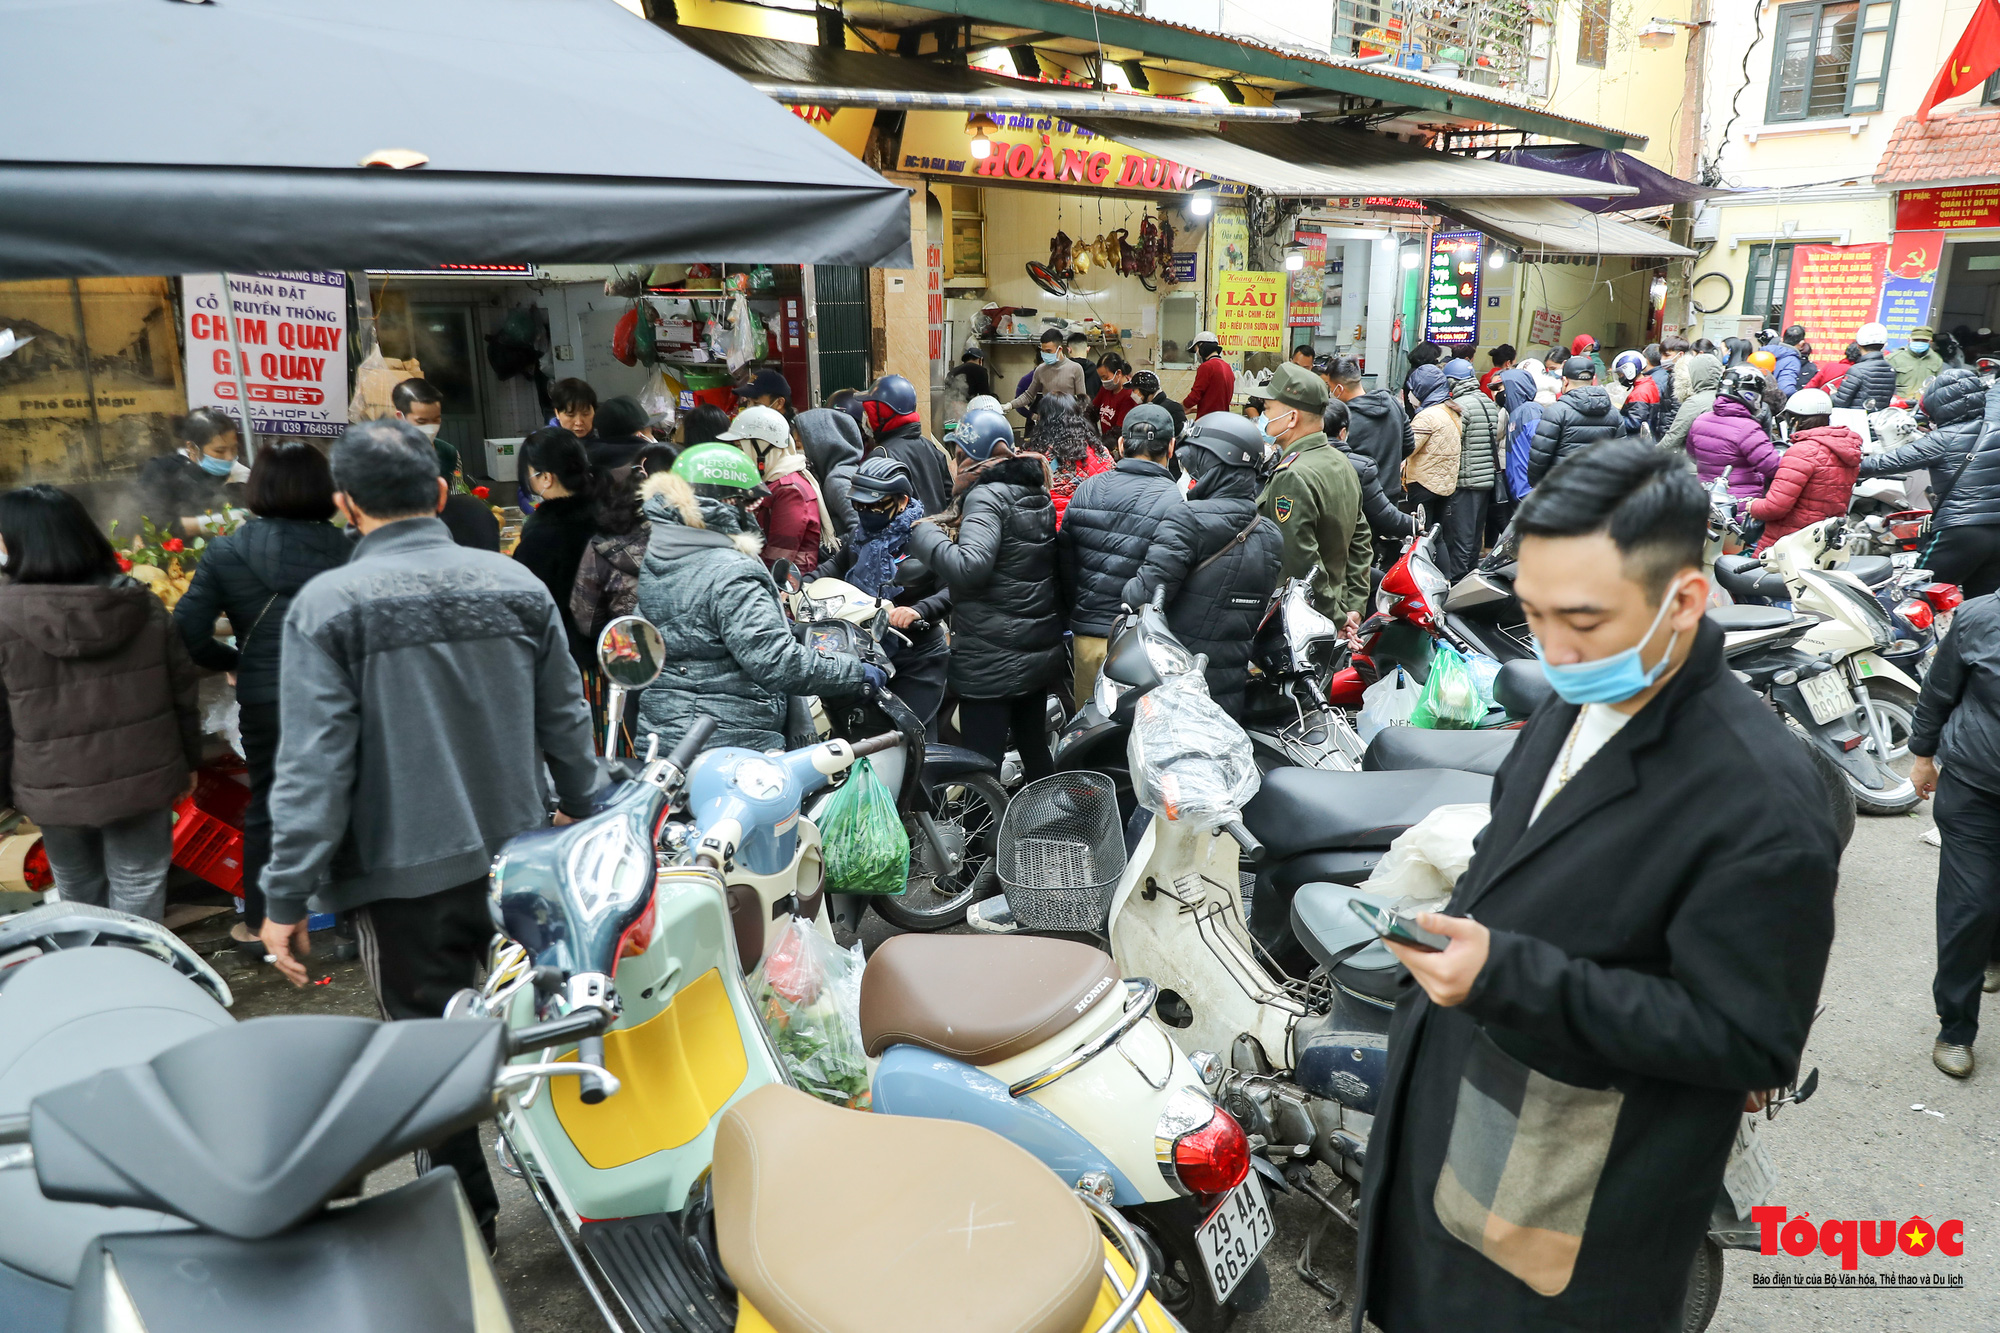 Hà Nội: Người người chen chân, mua bán tại “chợ nhà giàu” sáng 30 Tết - Ảnh 1.